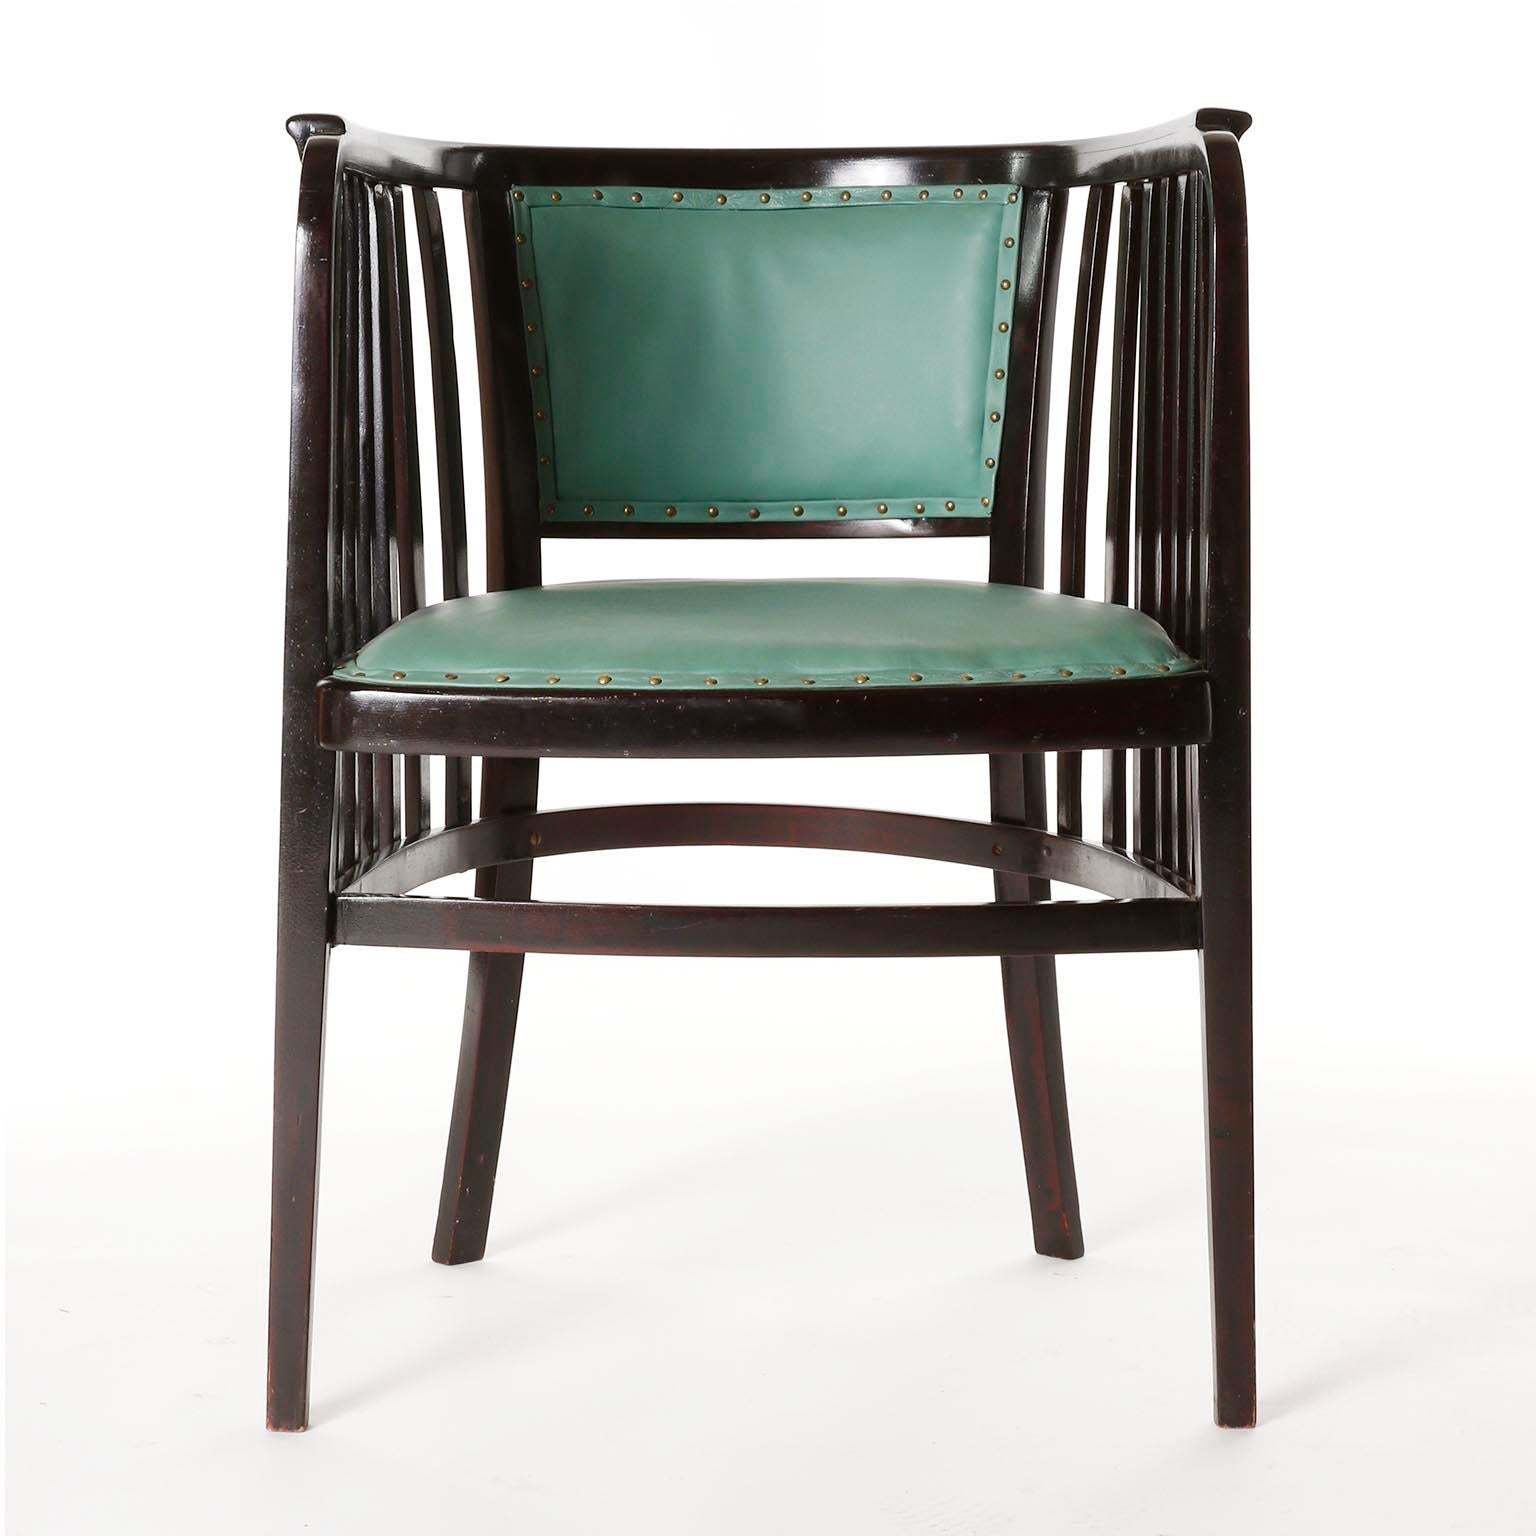 Une paire de fantastiques fauteuils en bois courbé conçus par Marcel Kammerer et fabriqués par Thonet, Autriche, vers 1910.
Ils sont fabriqués en bois de hêtre foncé ou presque noir, dans des tons acajou, et polis à la française, une technique qui